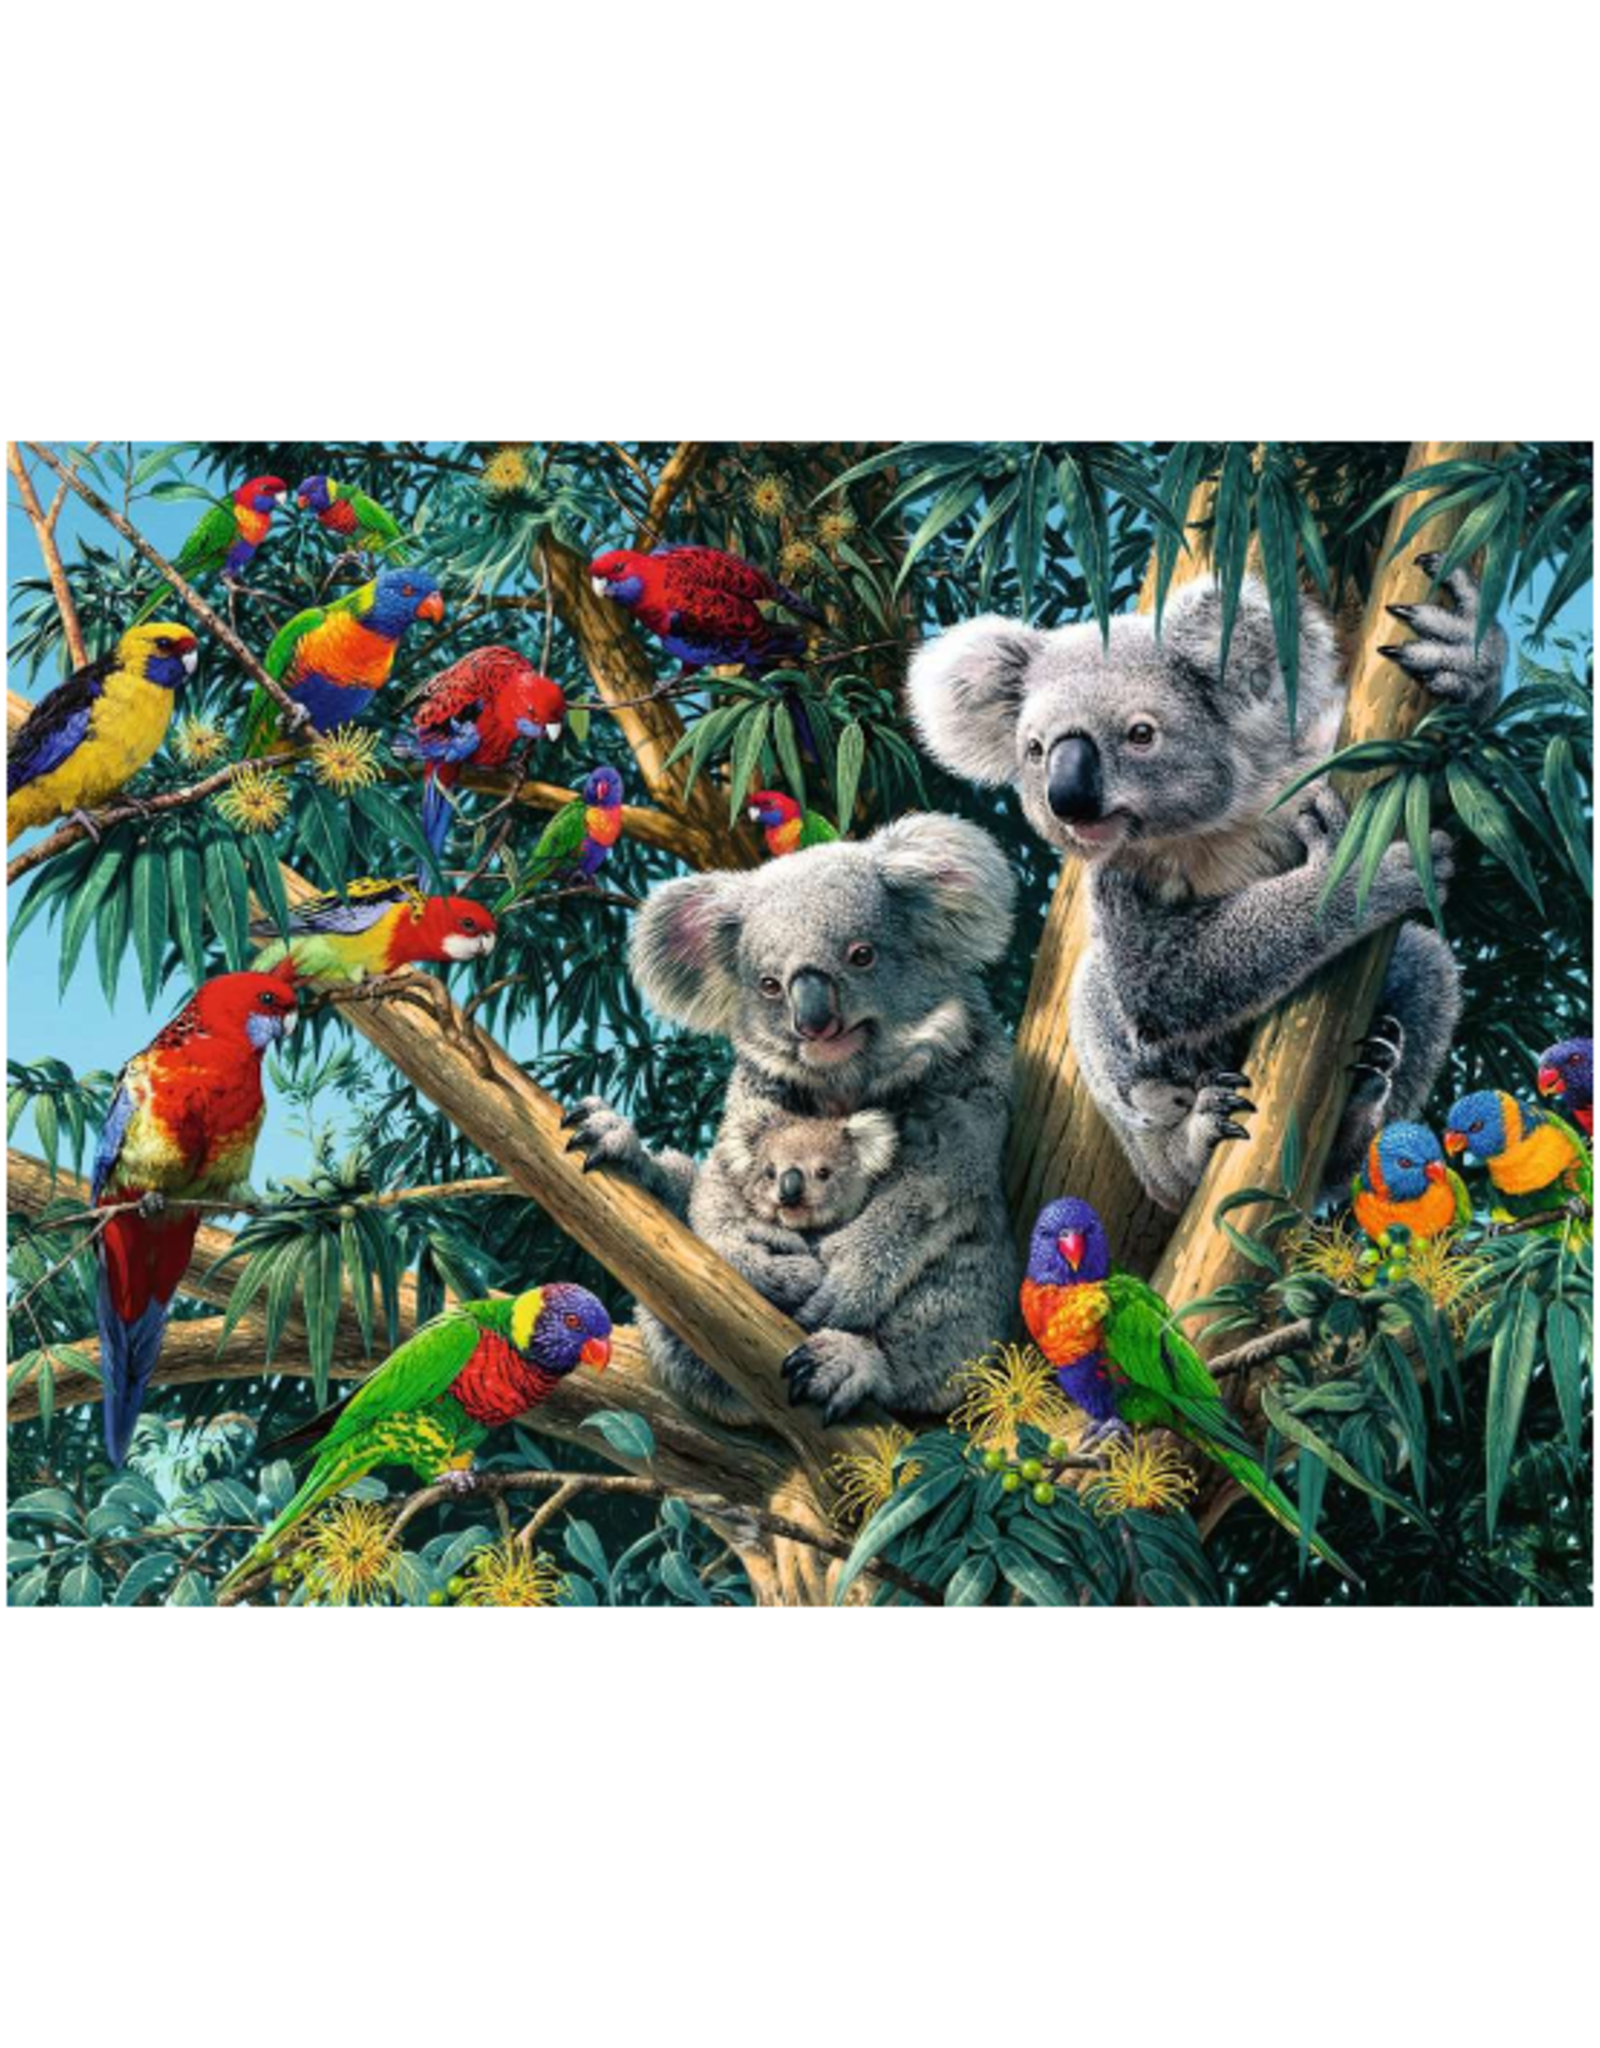 Ravensburger Ravensburger - 500pcs - Koalas in a Tree